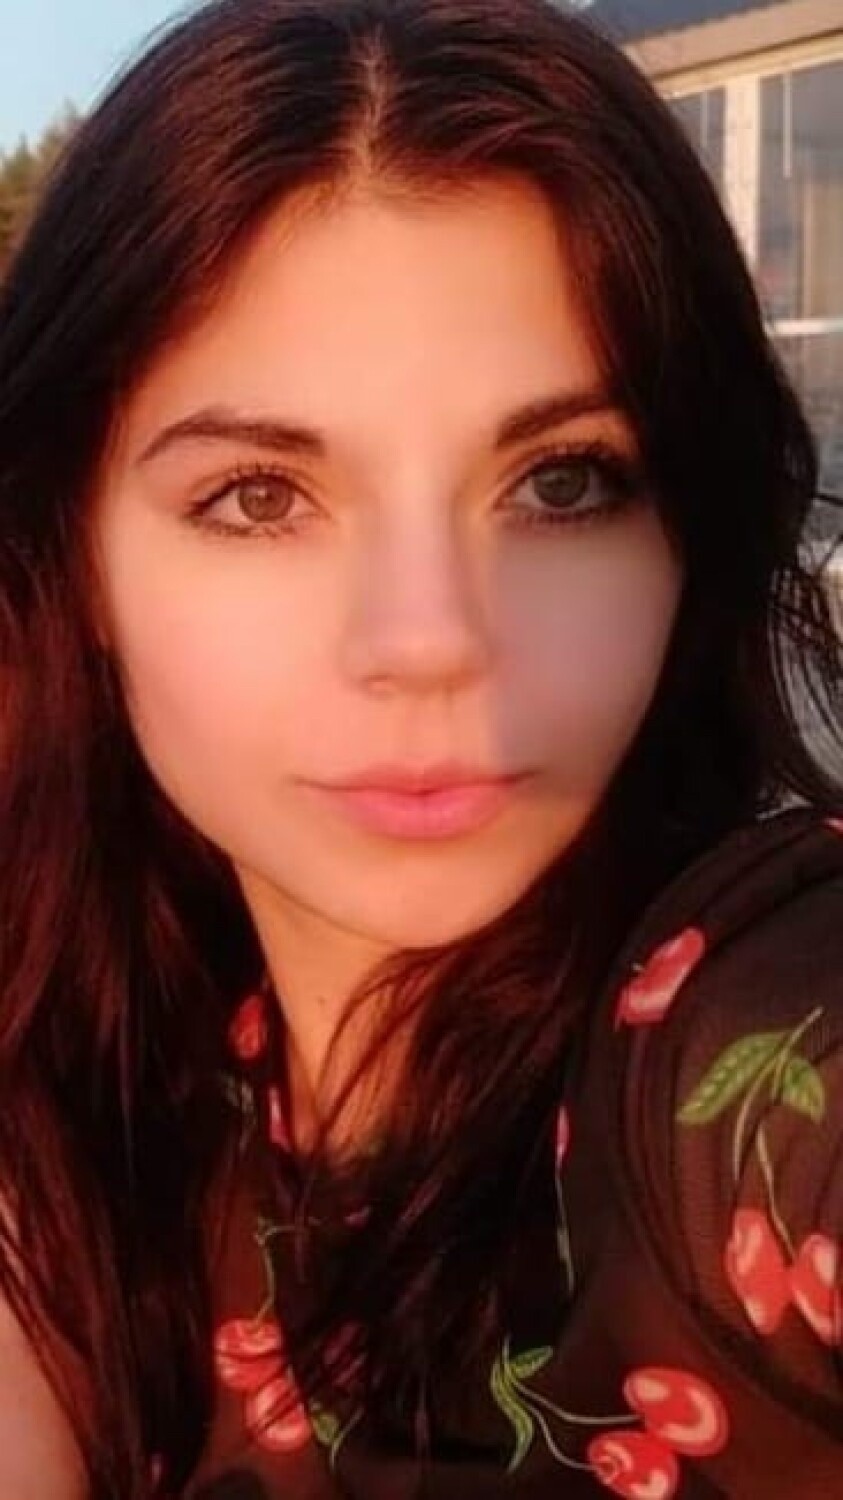 Zaginęła 16-letnia Sofia Ostafichuk. Widzieliście ją? Ostatni raz była widziana w Karwi